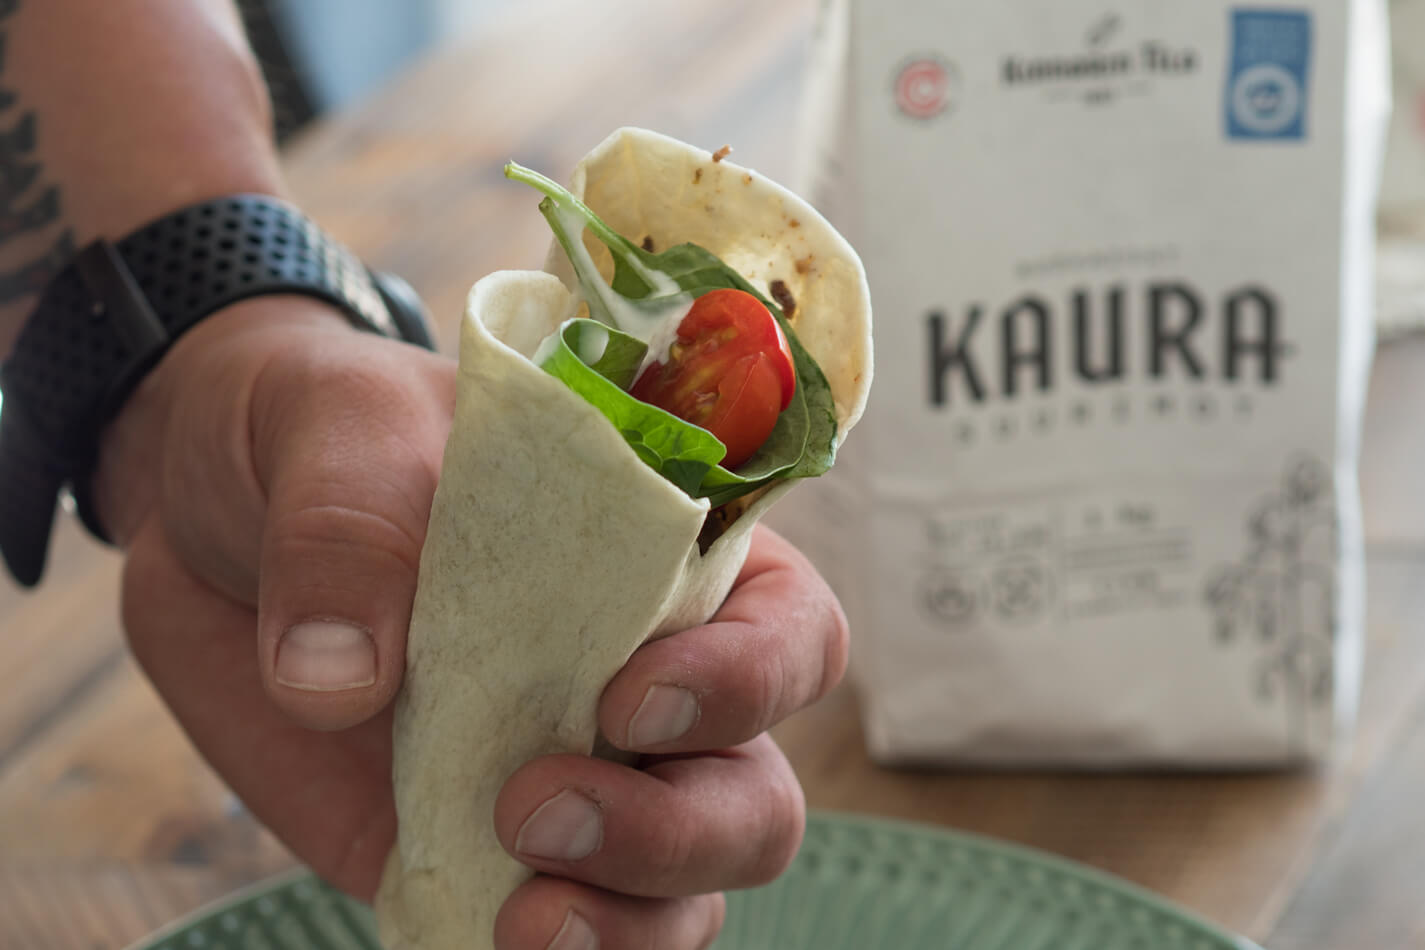 Kaura-mustapapu-burrito